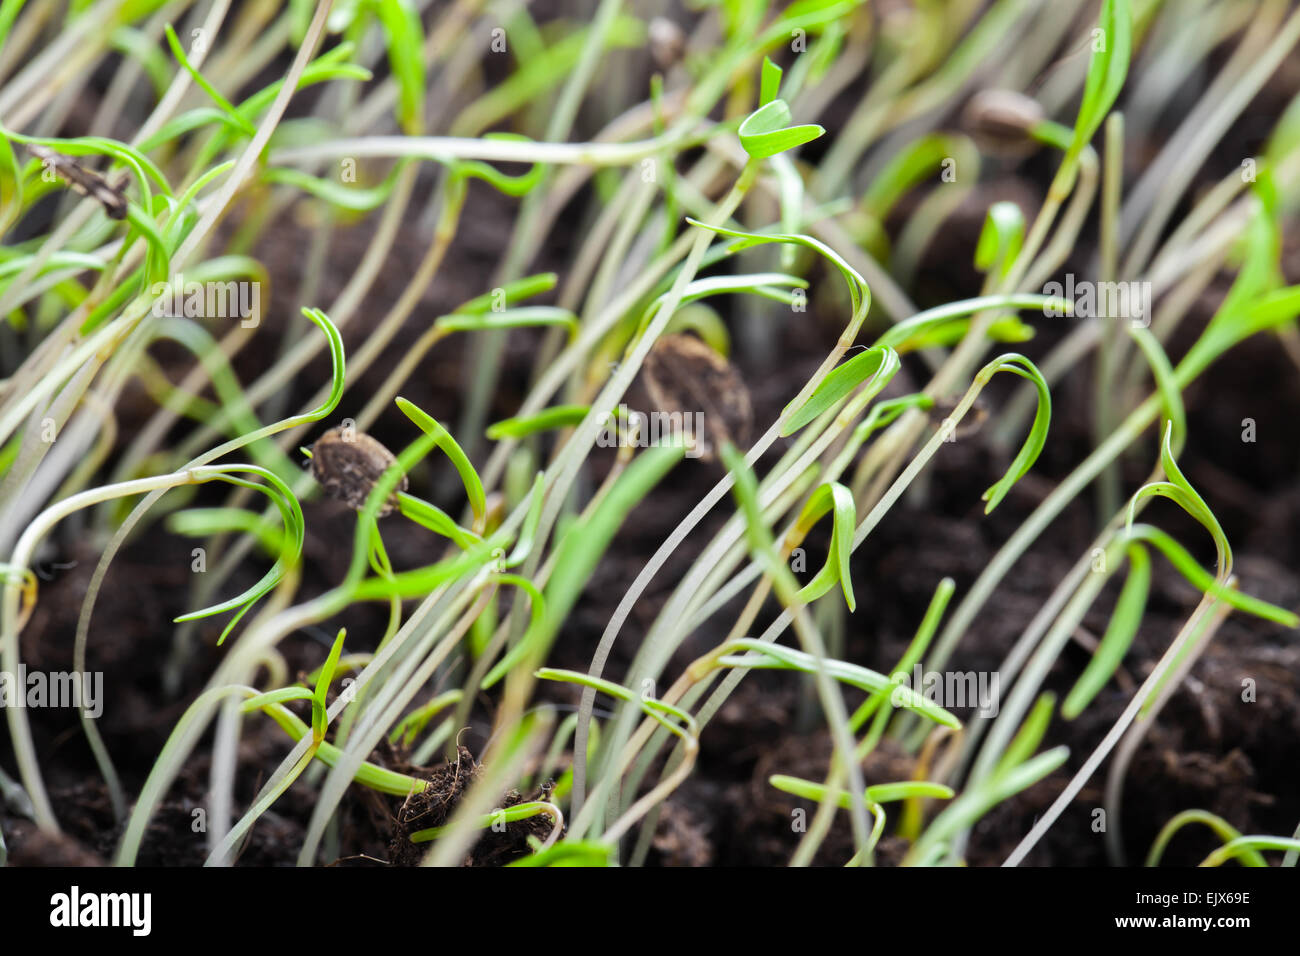 Jungen grünen Sprossen des Frühlings Rasen über dunkler Erde Hintergrund. Makro-Foto mit Tiefenschärfe und flachen DOF Stockfoto